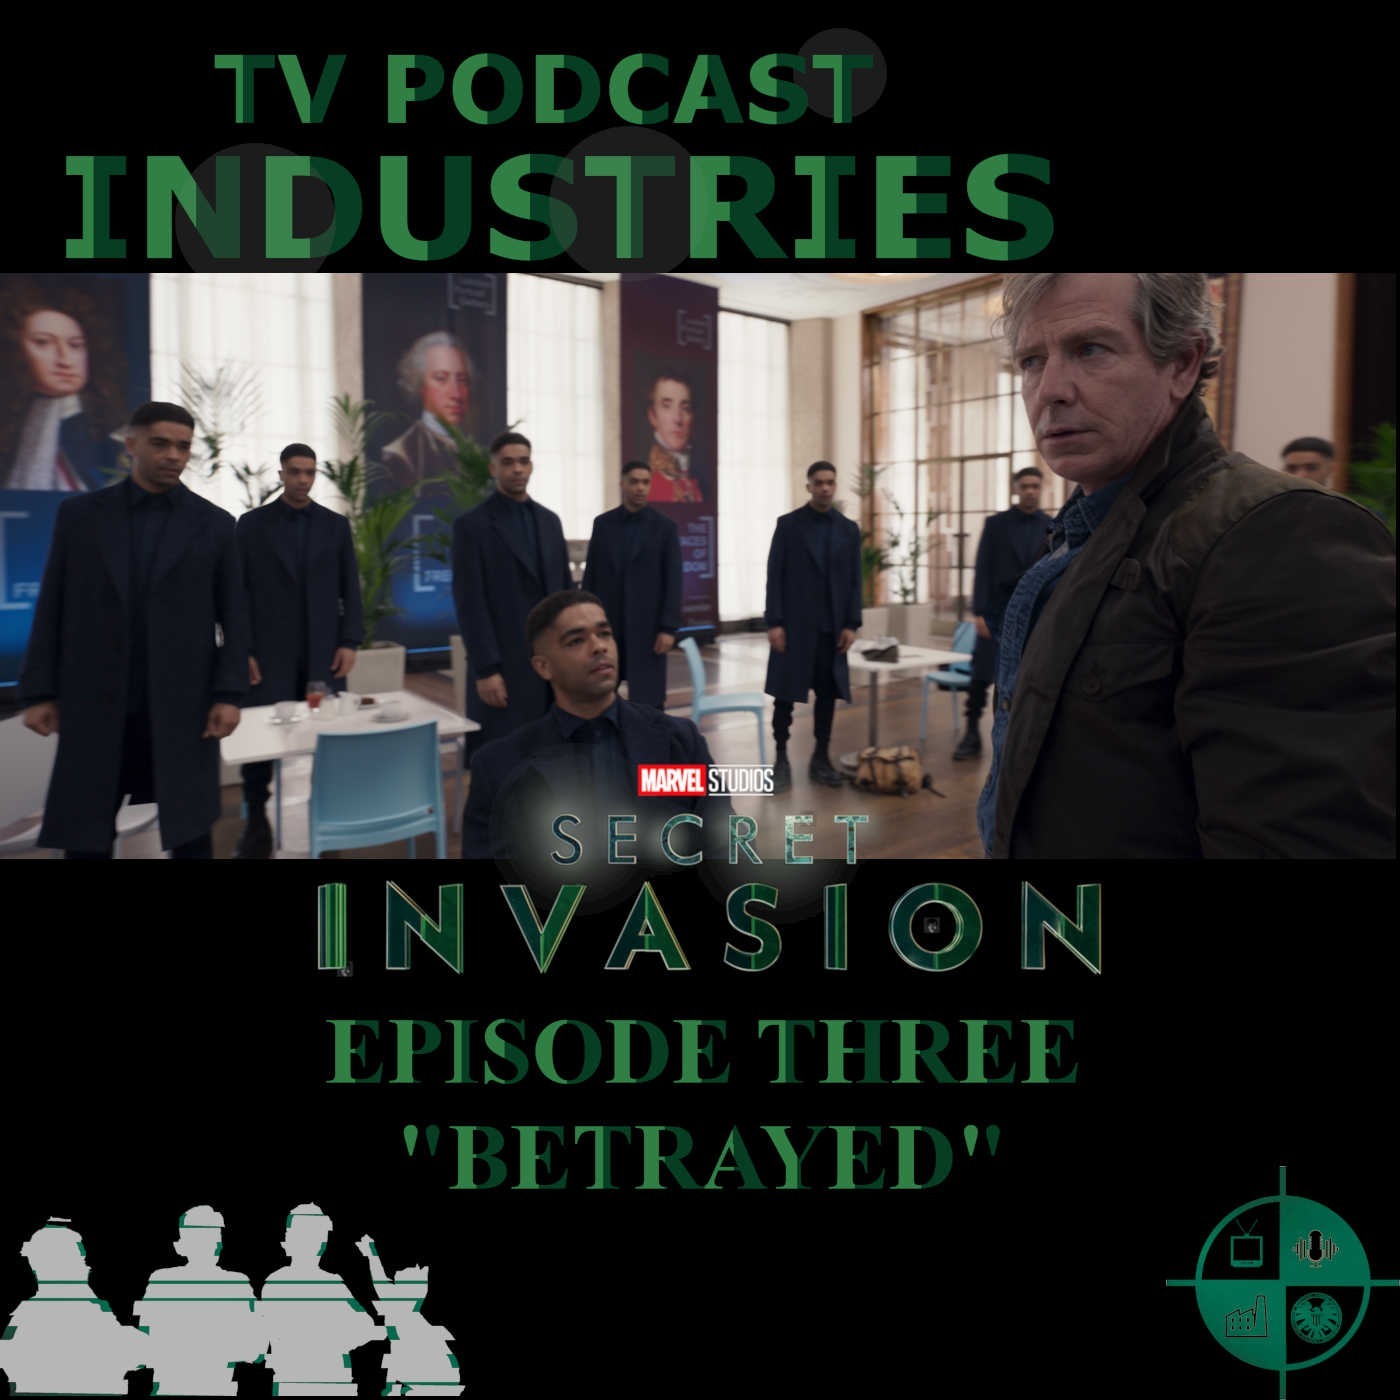 Secret Invasion Episode 3 "Betrayed" Podcast